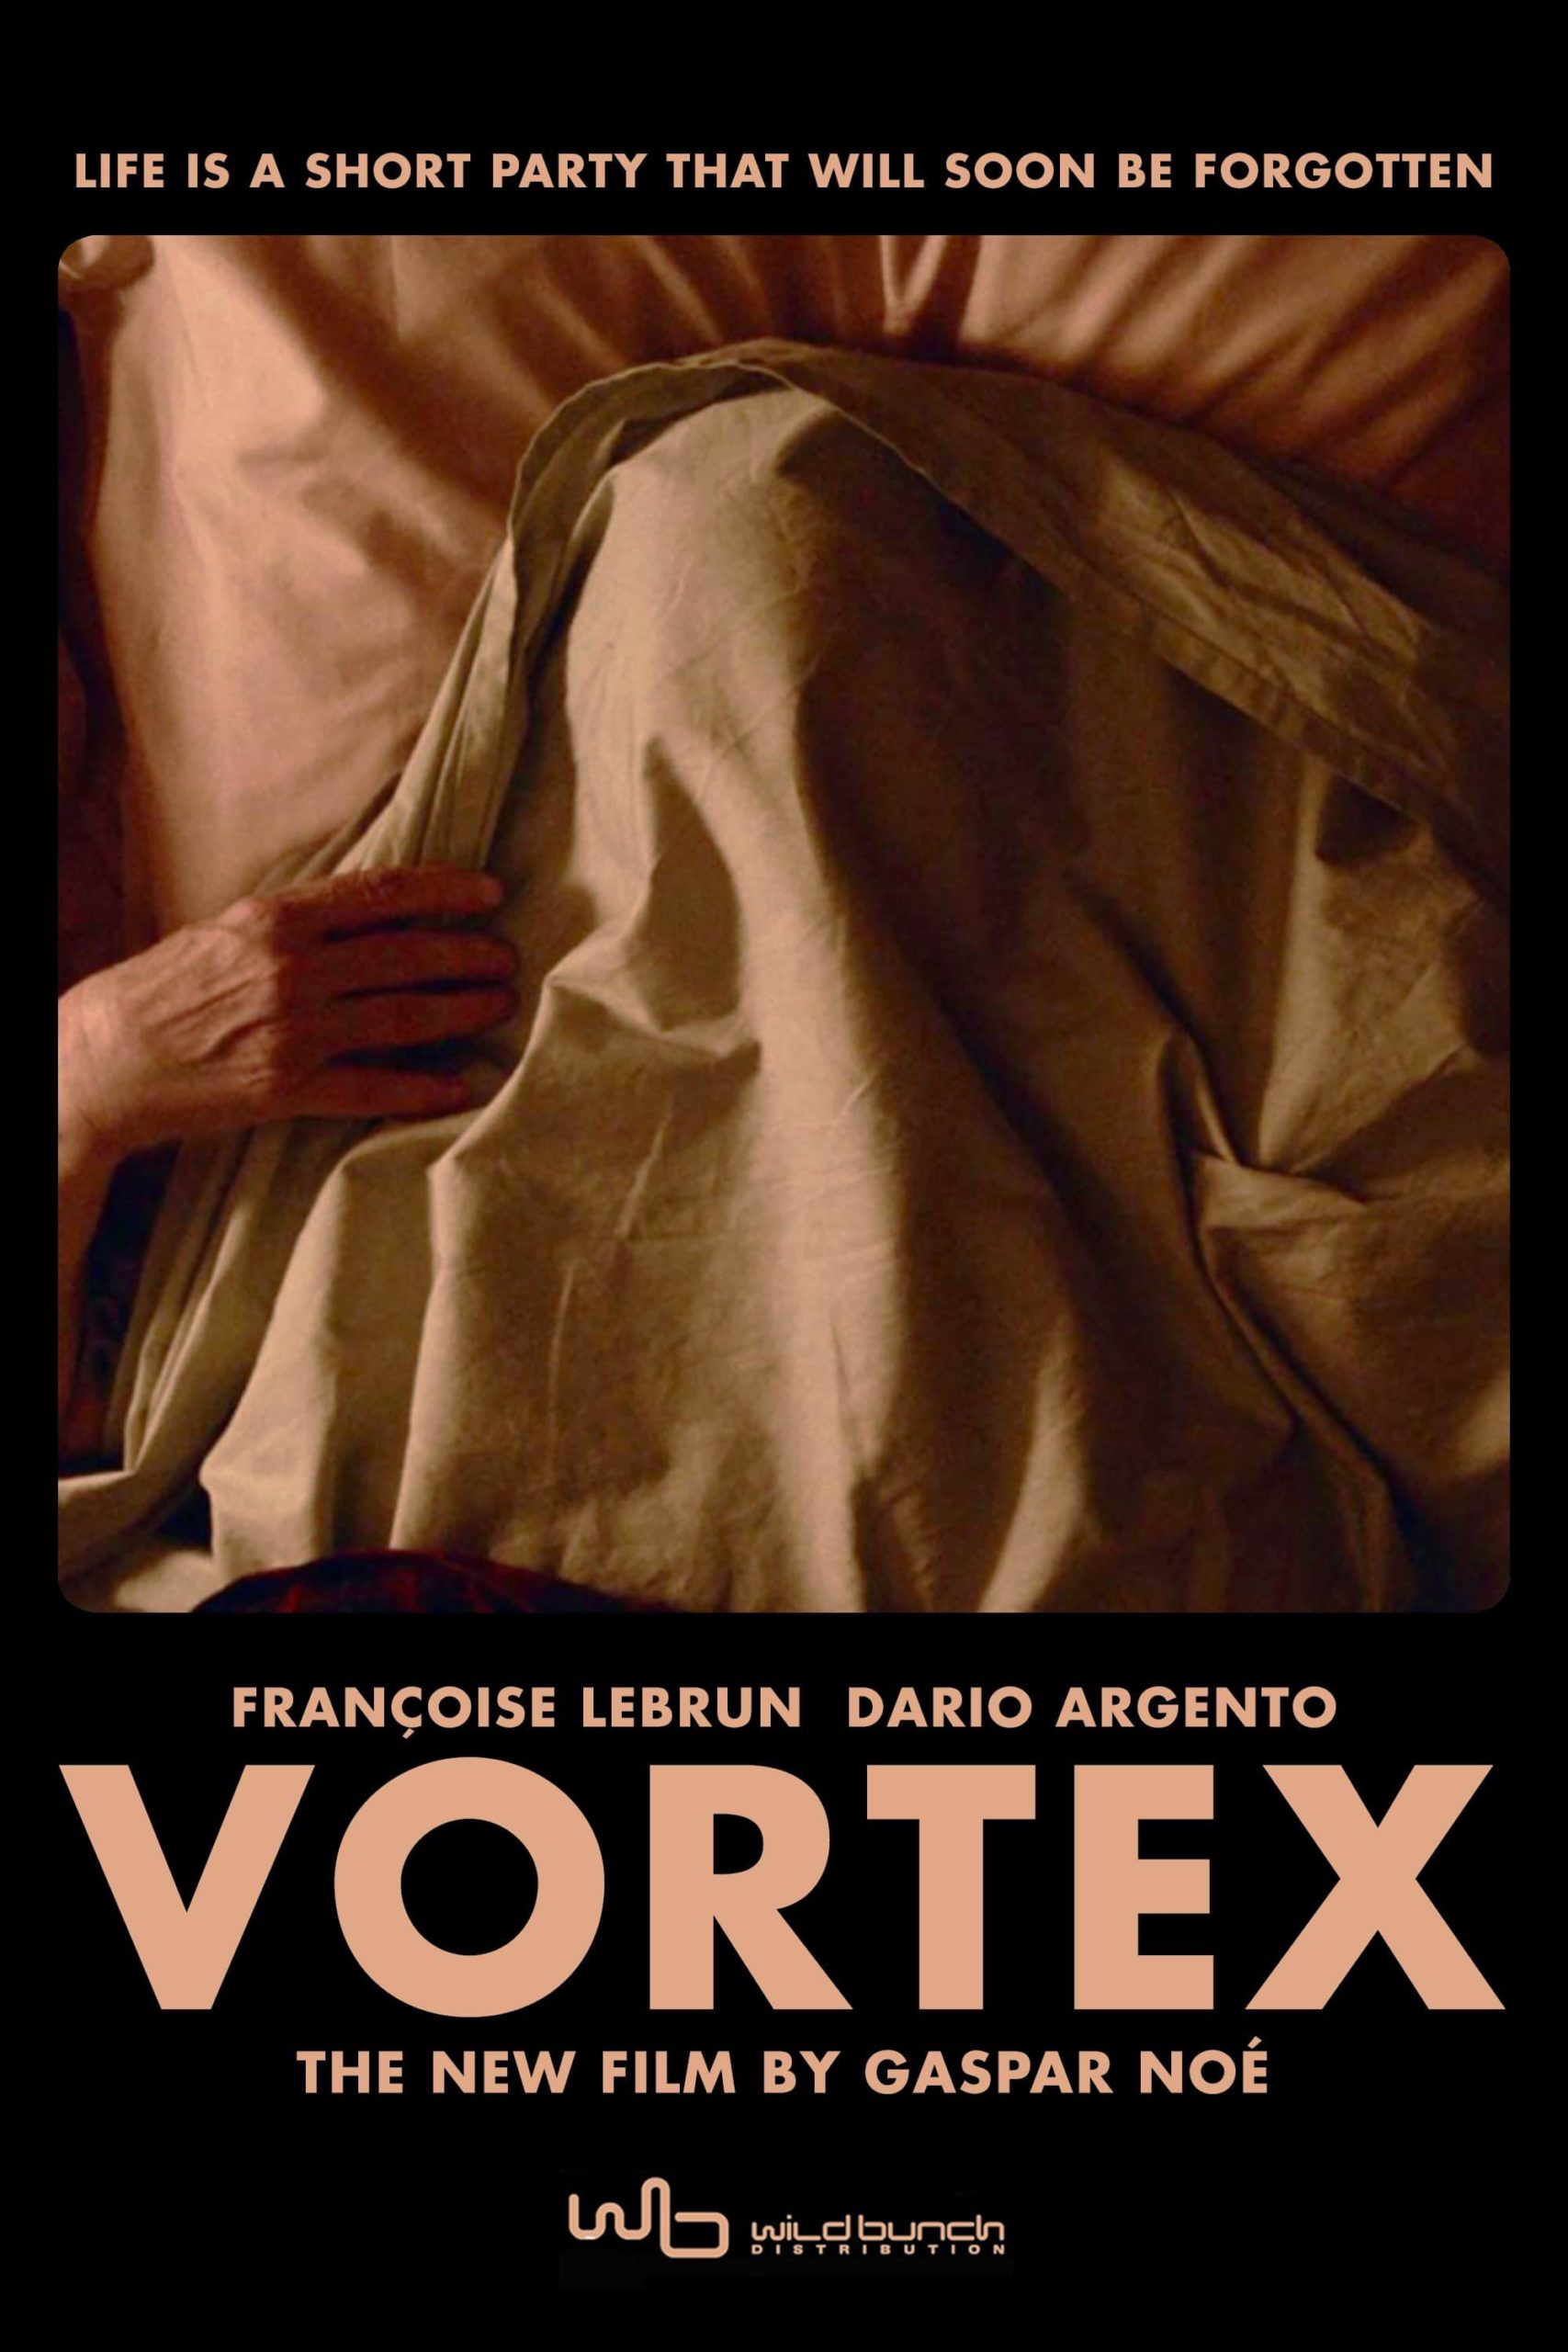 Vortex Movie 2022, Official Trailer, Release Date